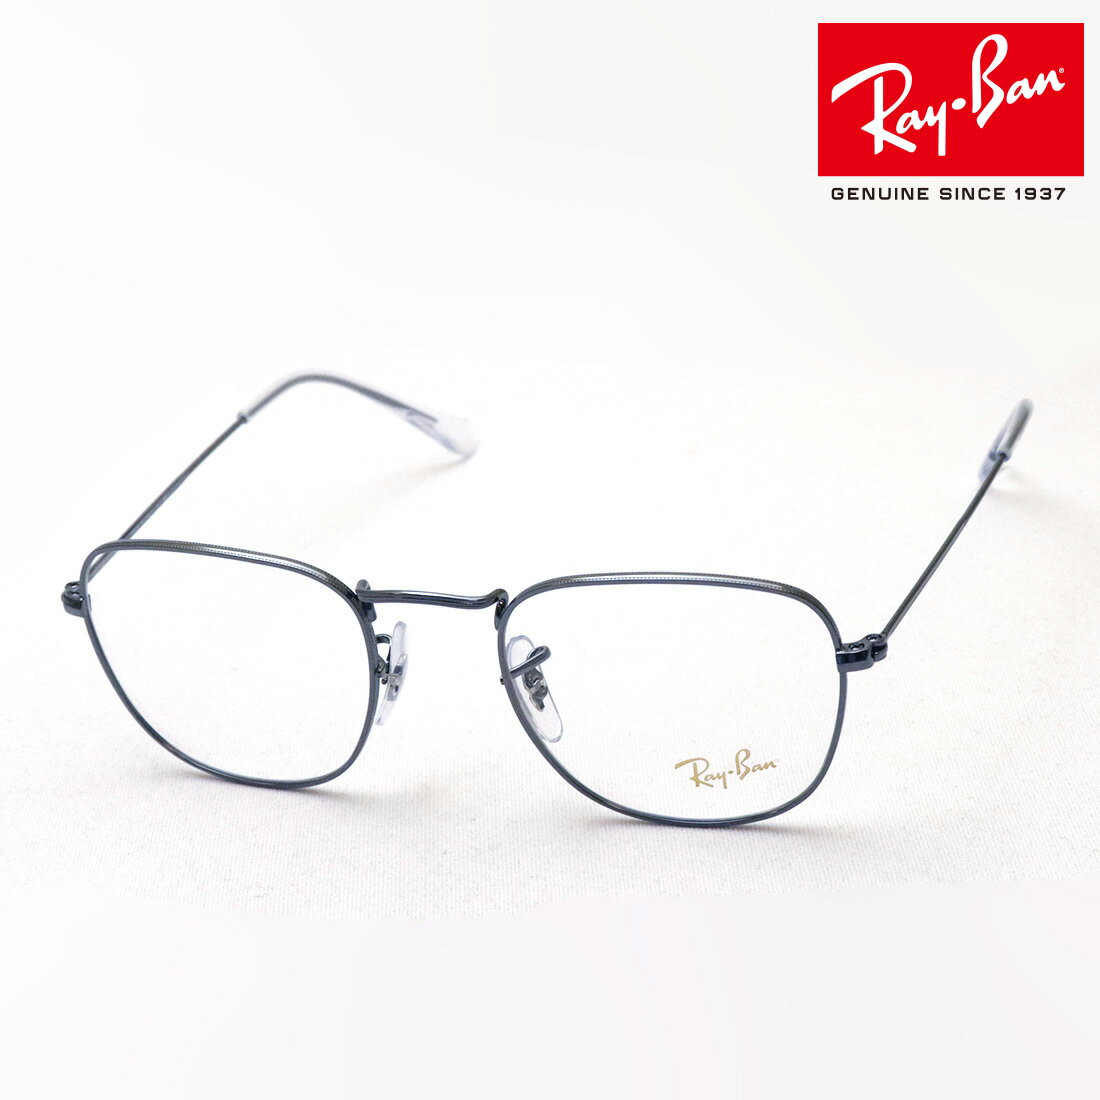 レイバン メガネ メンズ 正規レイバン日本最大級の品揃え レイバン メガネ フレーム フランク Ray-Ban RX3857V 2502 RX3857VF 2502 伊達メガネ 度付き ブルーライト カット 眼鏡 メタル RayBan スクエア シルバー系